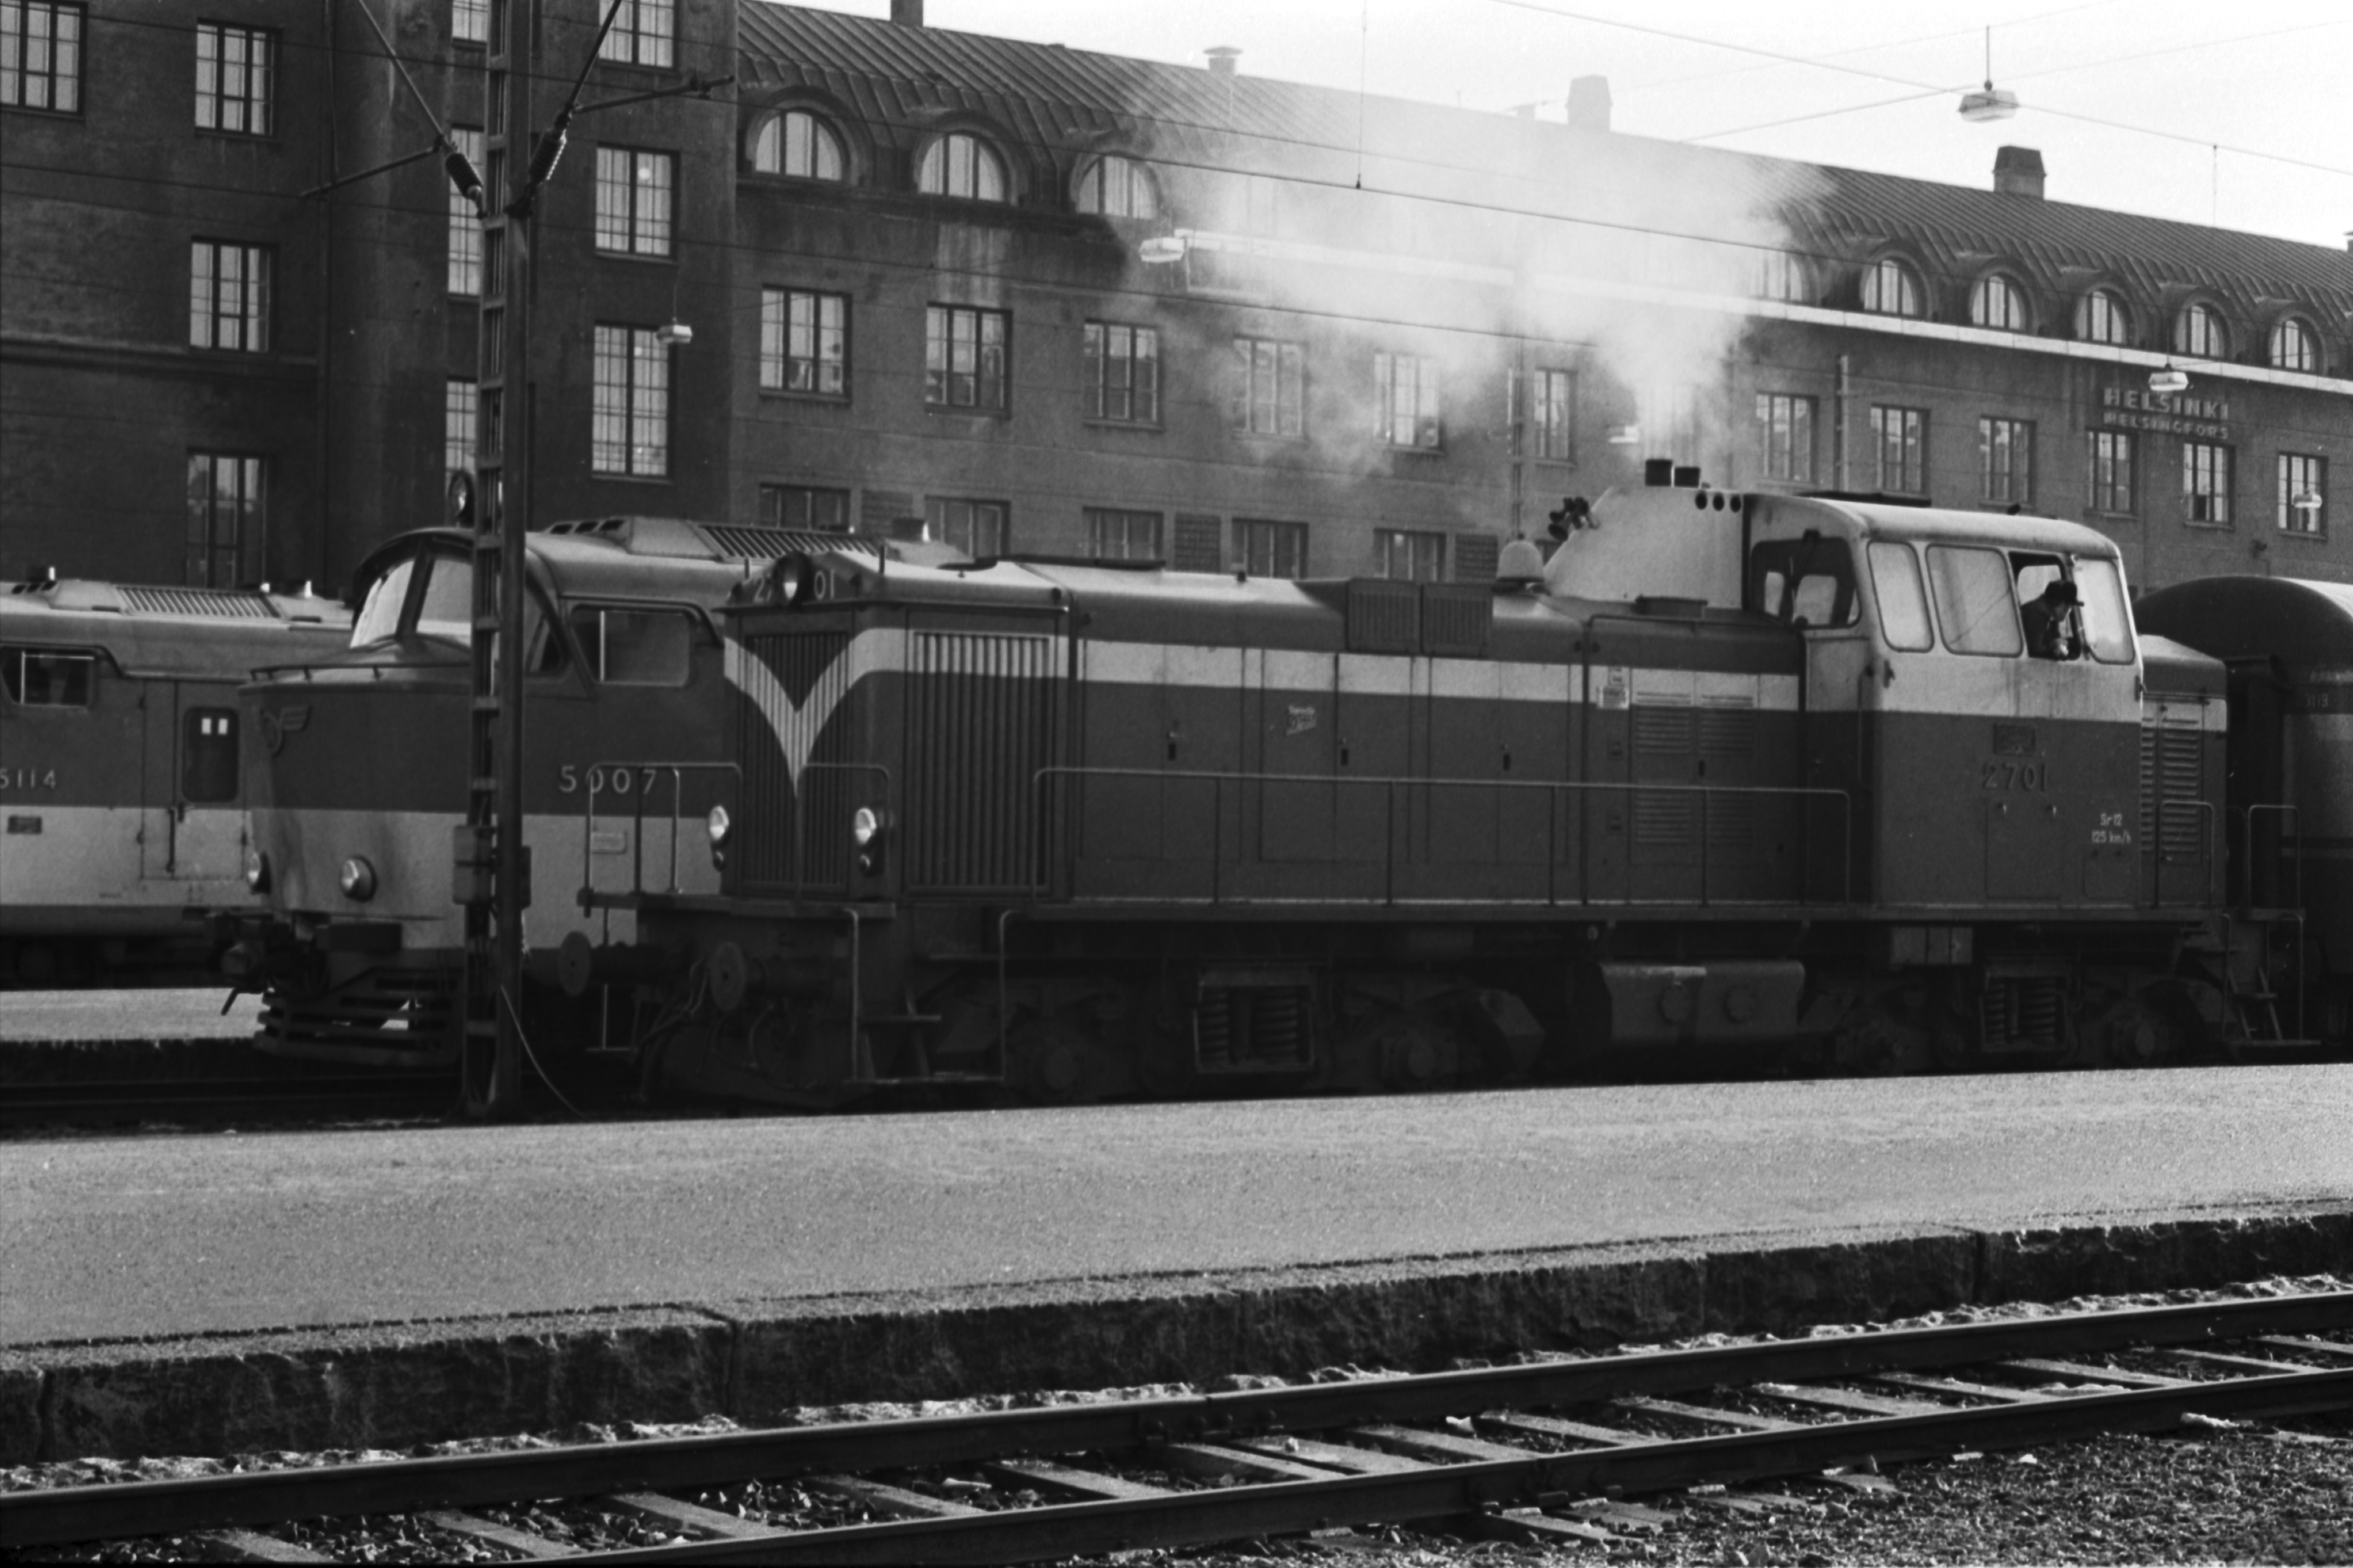 Helsingin rautatieasema. Juna, jossa Sr12 sarjan dieselveturi 2701 Helsingin rautatieasemalla.